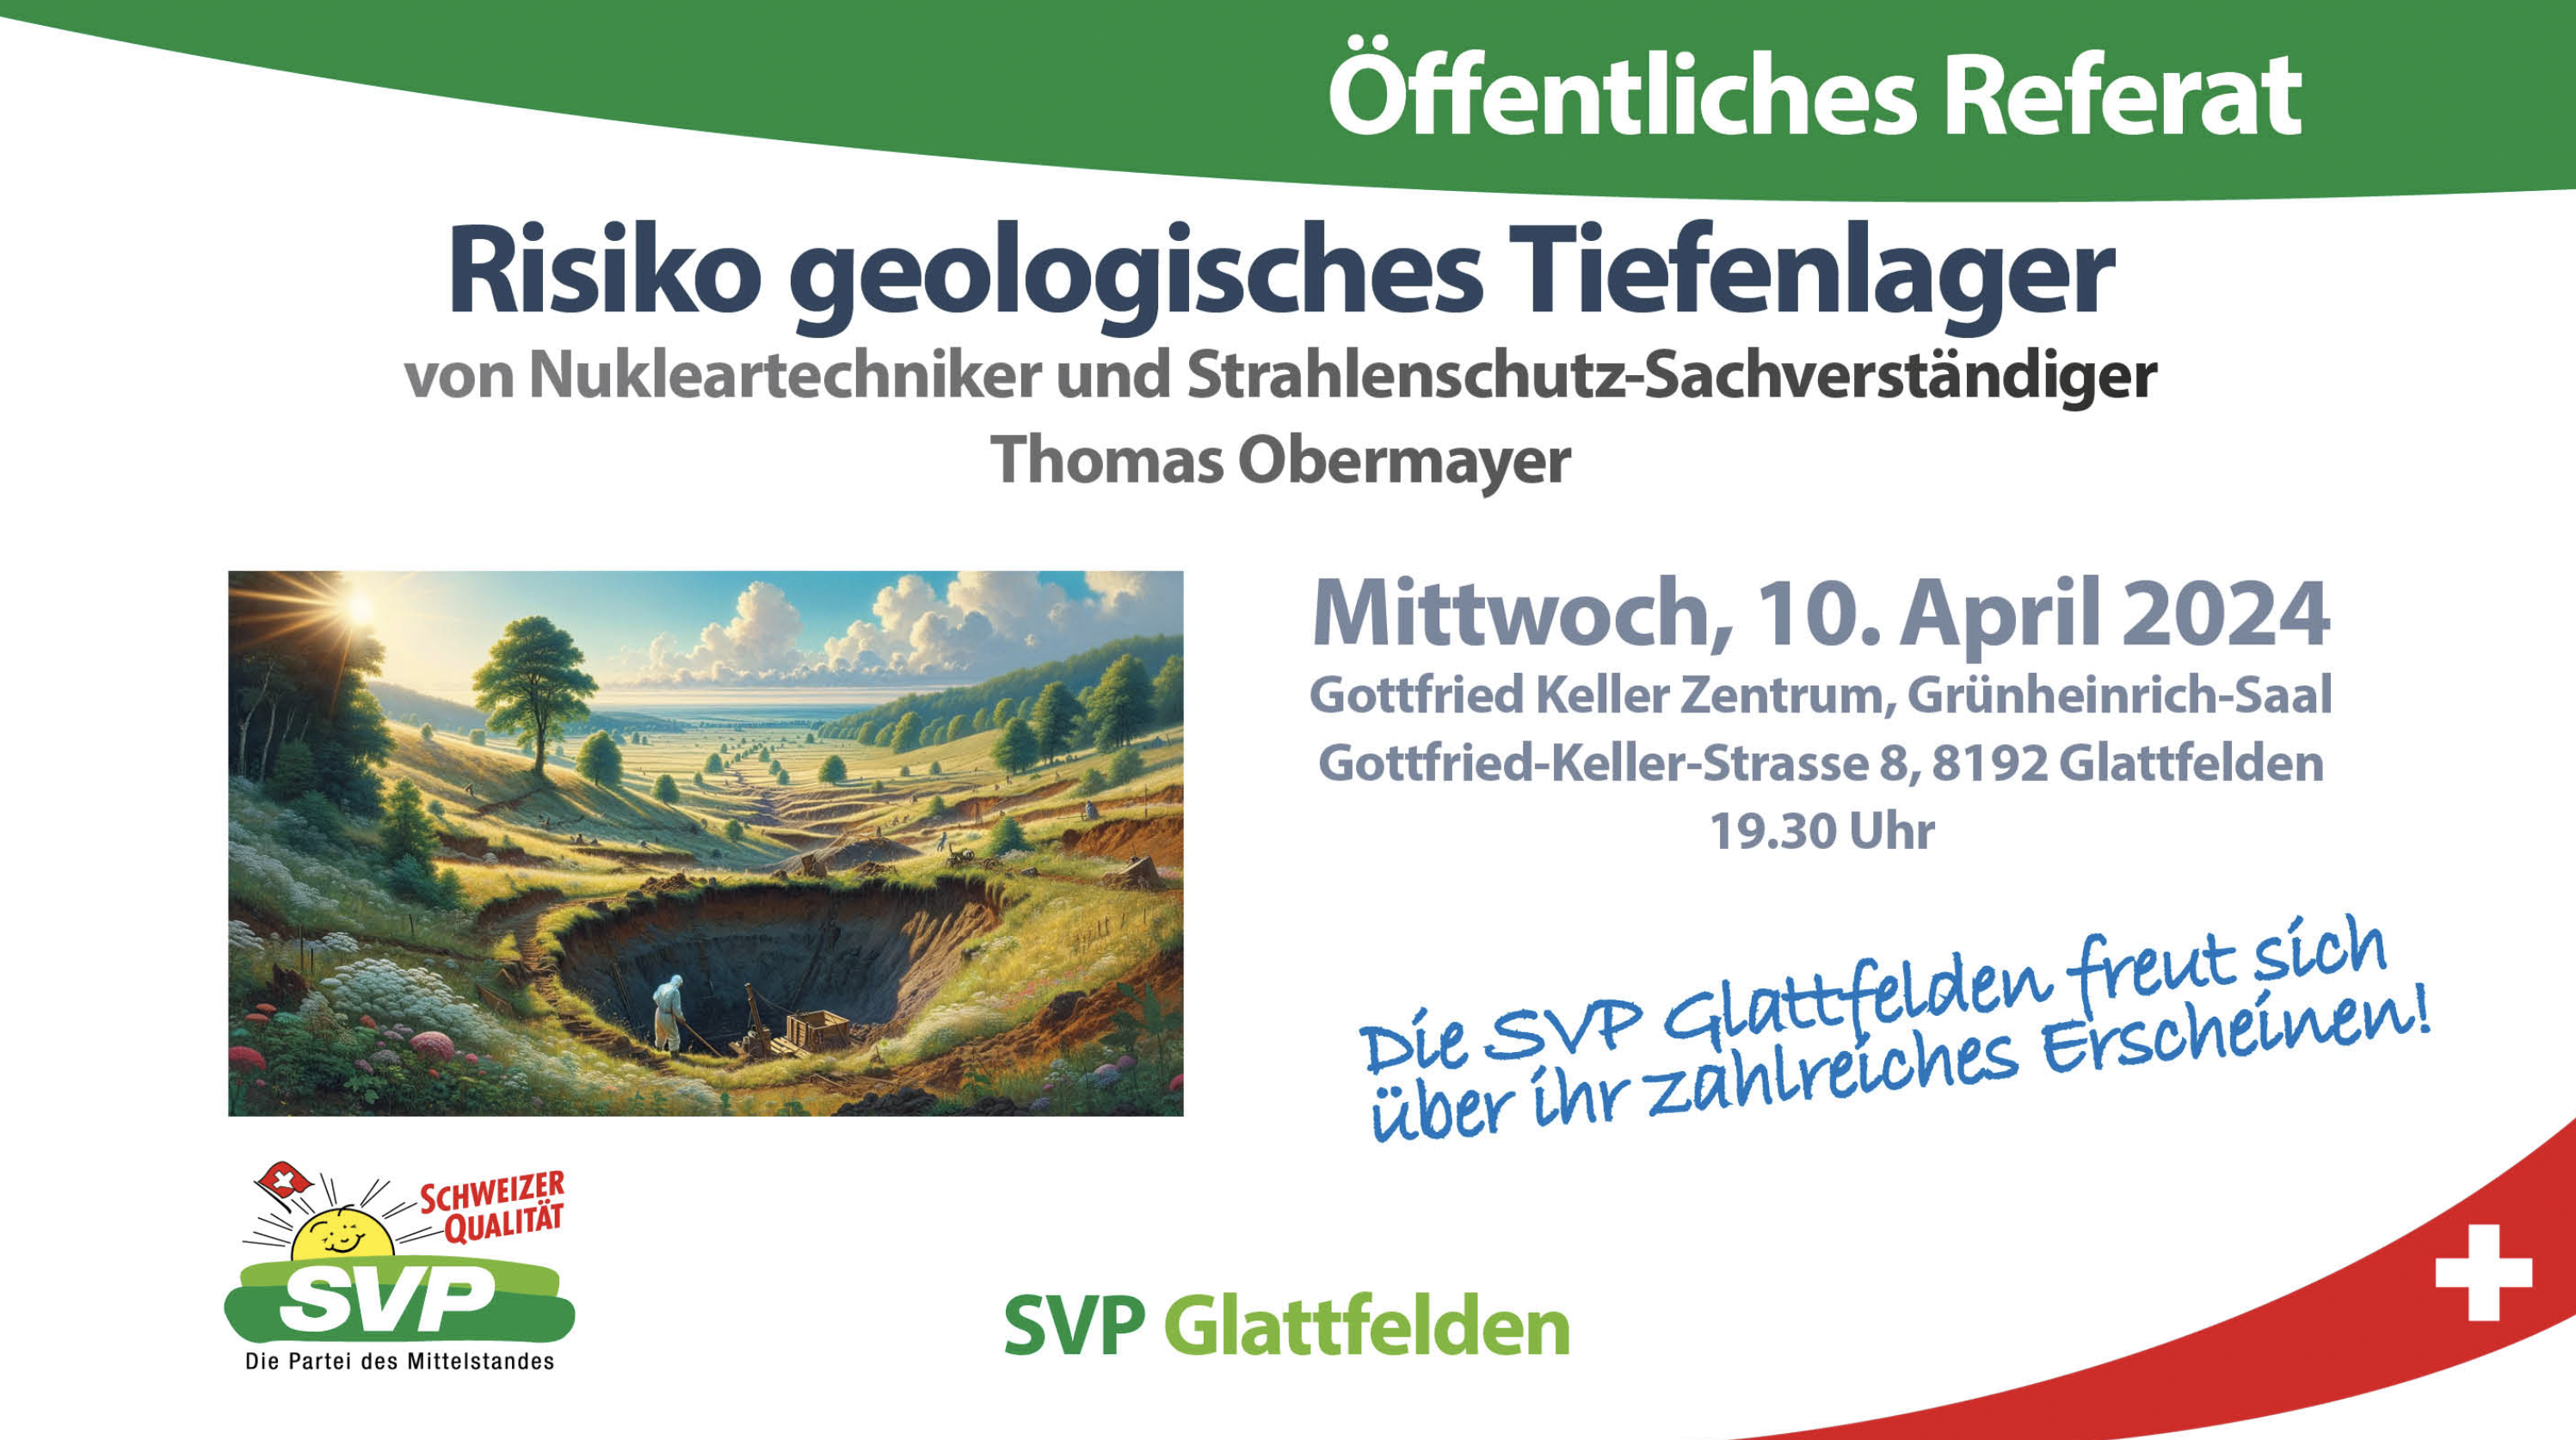 Referat: "Risiko geologisches Tiefenlager"